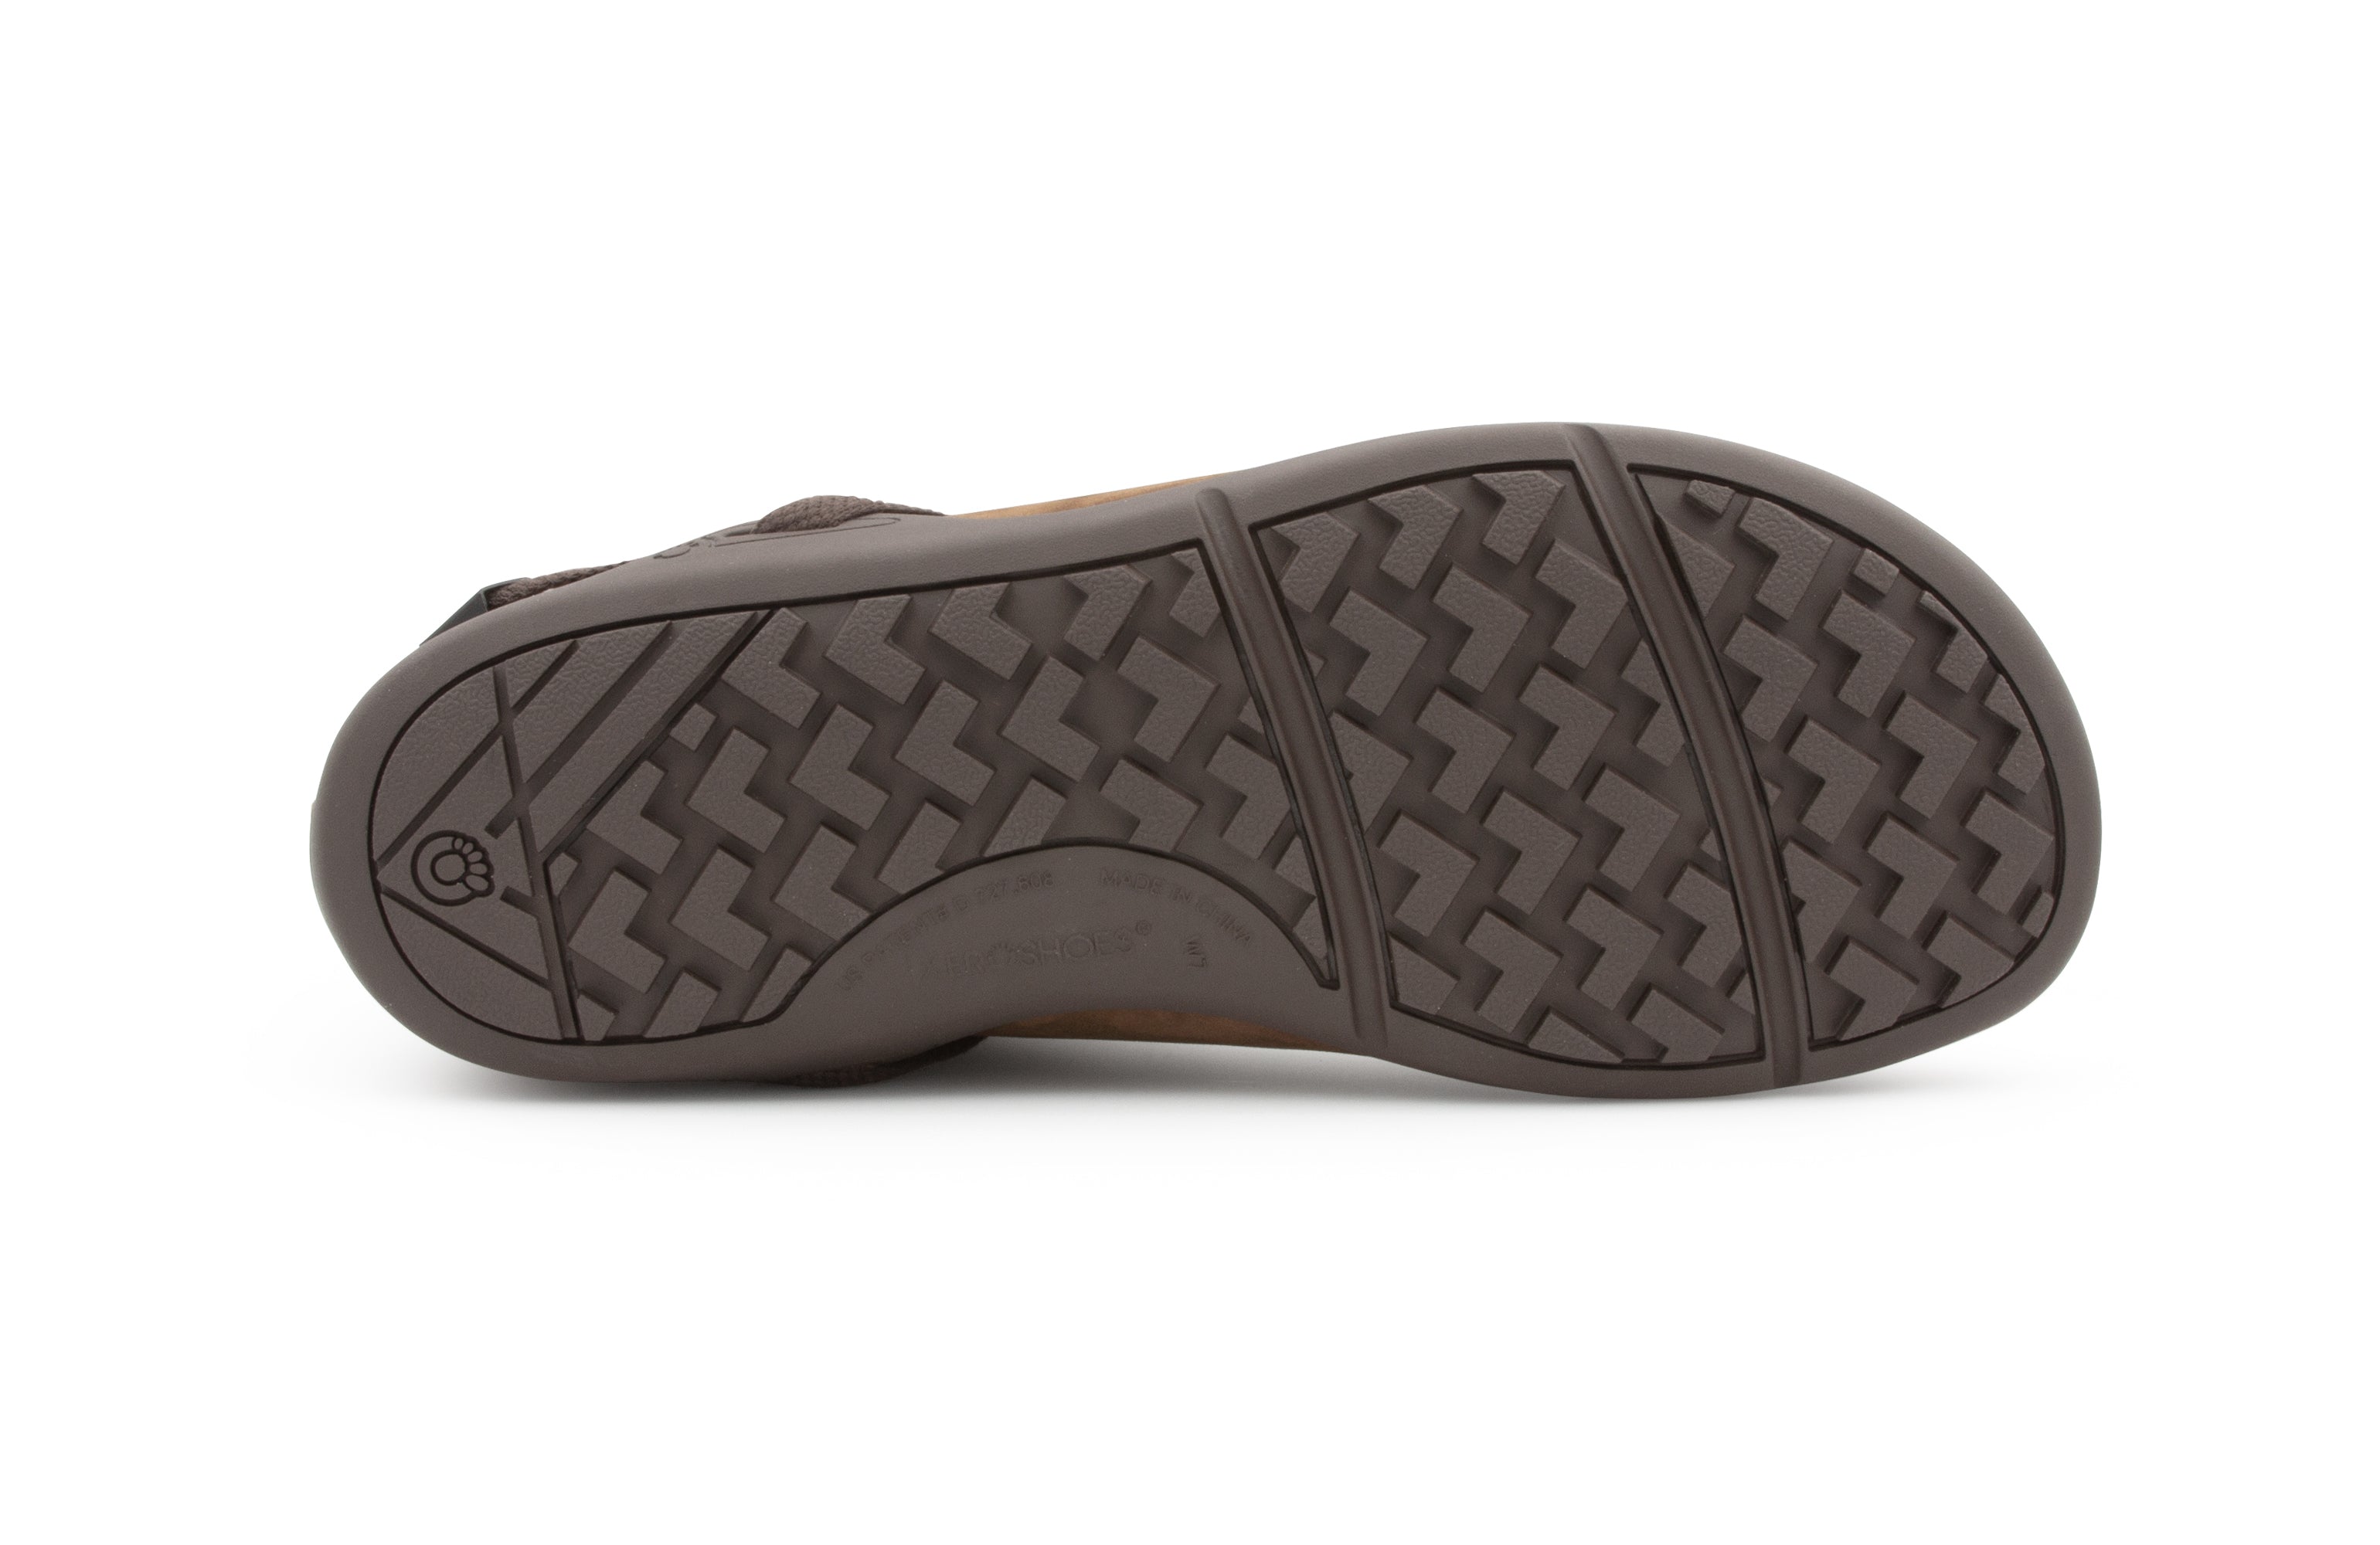 Xero Shoes Tari barfods chelsea vinterstøvler til kvinder i farven toffee, saal